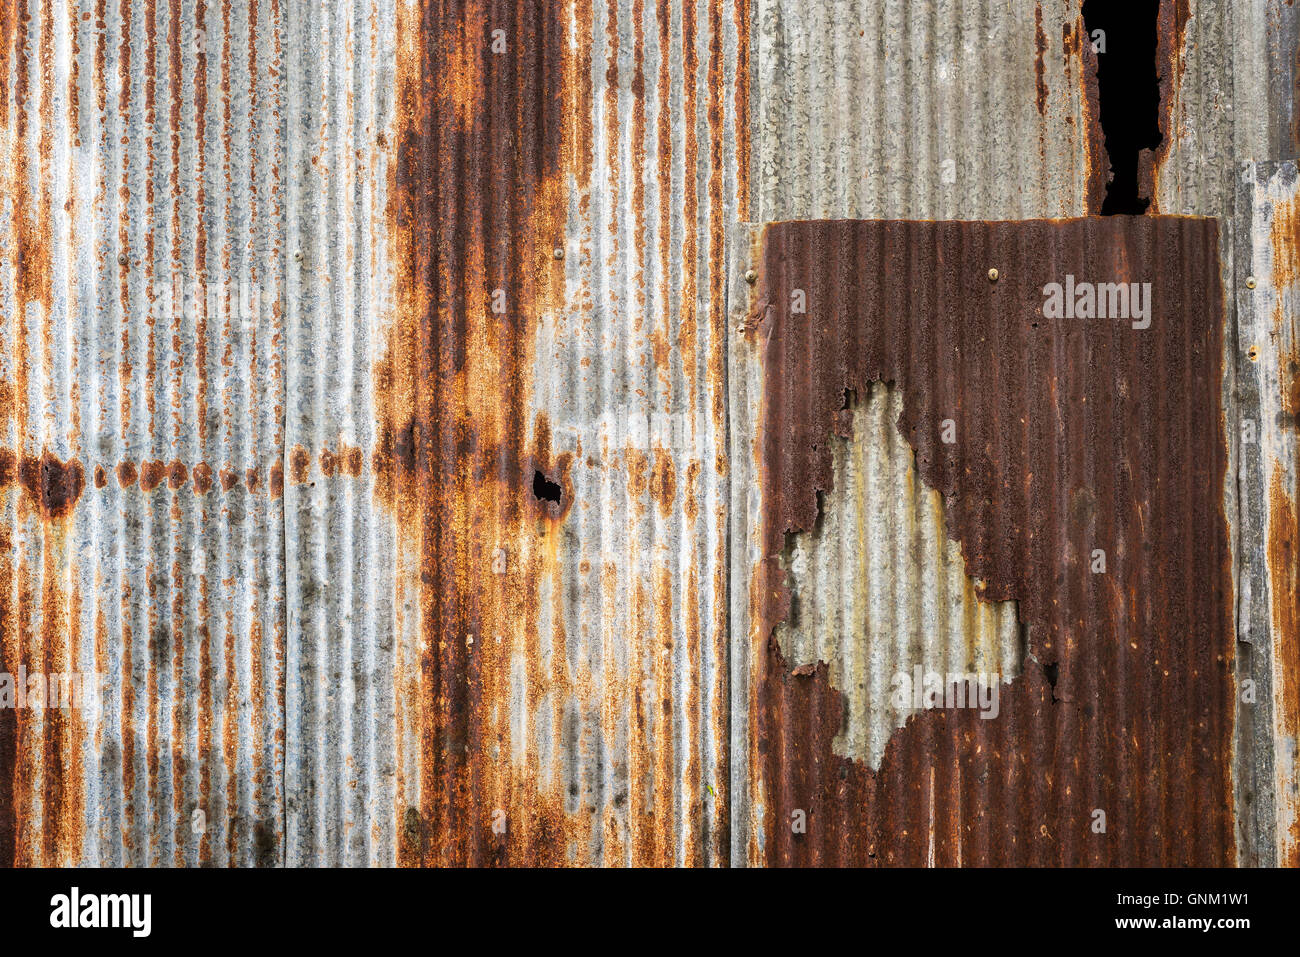 Old rusty zinc plat wall. Stock Photo